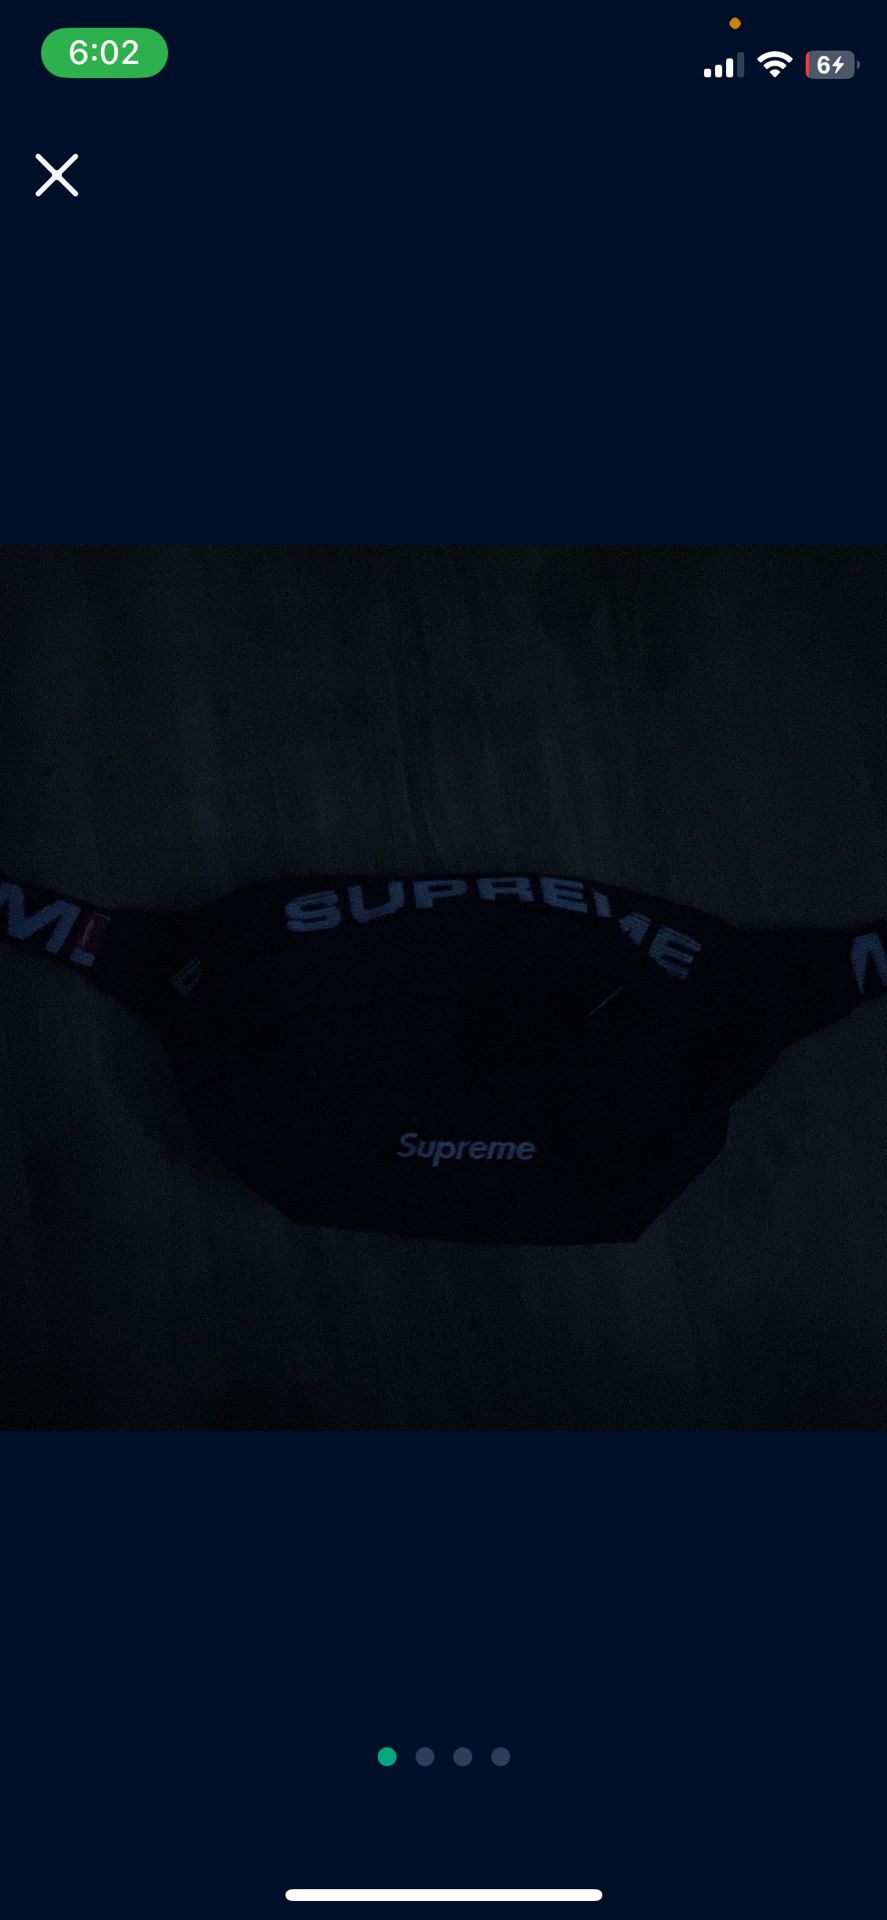 Supreme Ss18 Bag